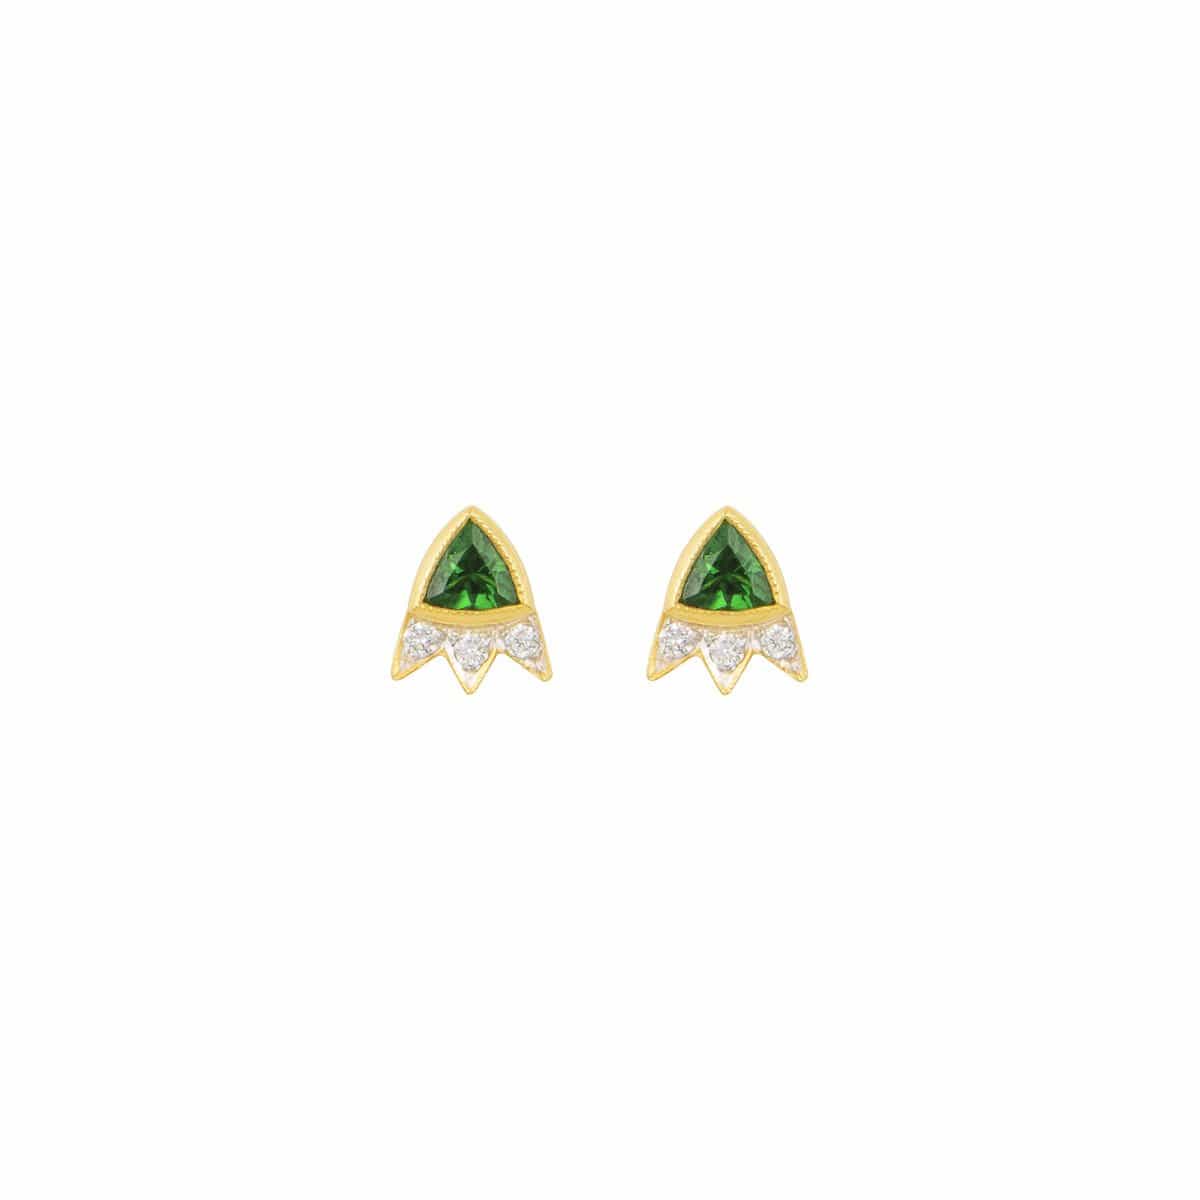 Green Tsavorite Trillion Cut Starburst Diamond Earrings